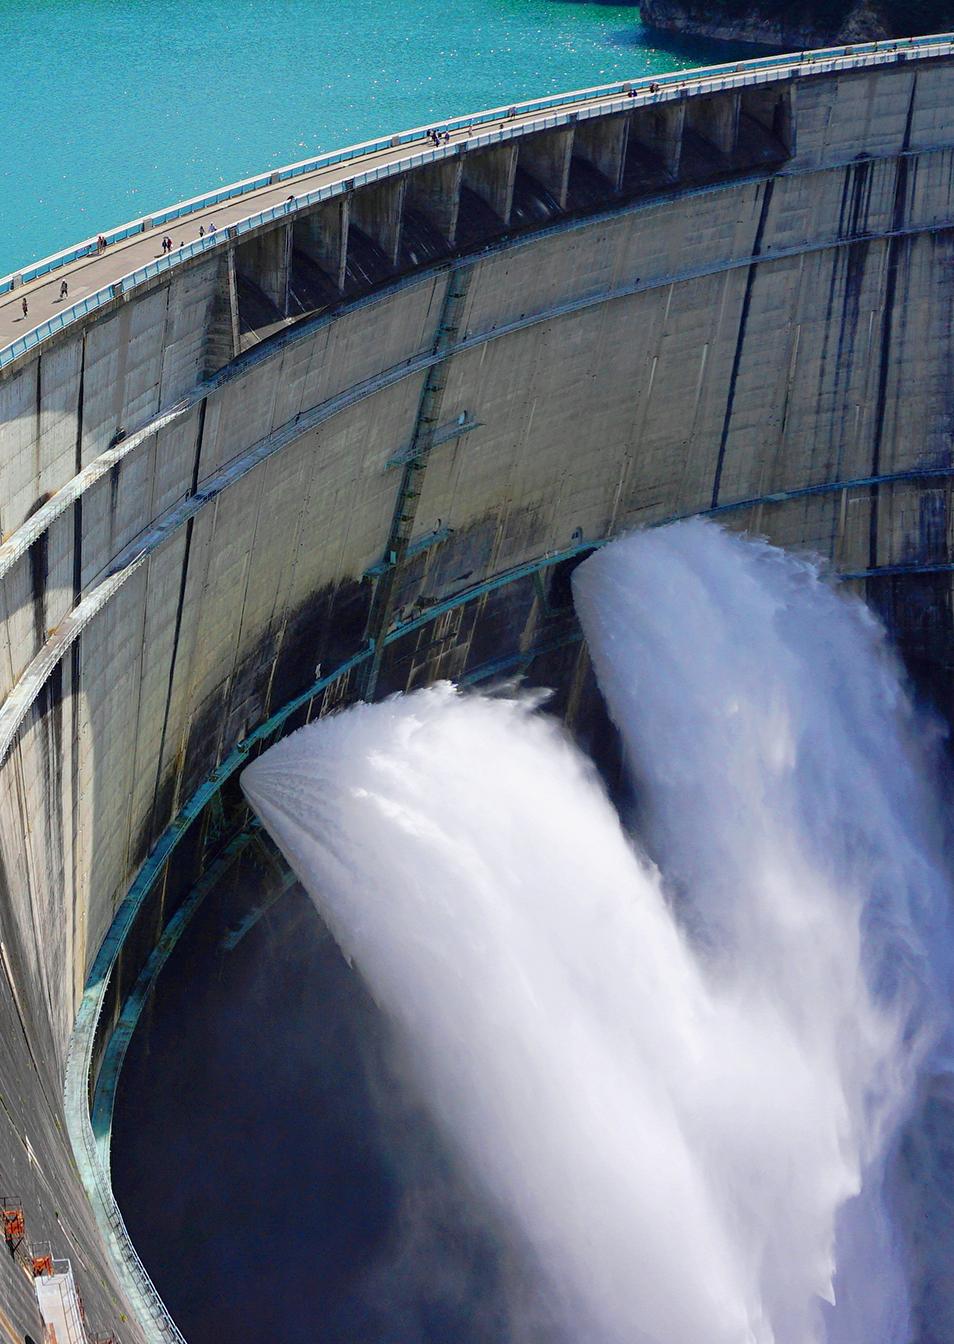 Mancais de energia hidrelétrica GGB para aplicações em barragens hidrelétricas